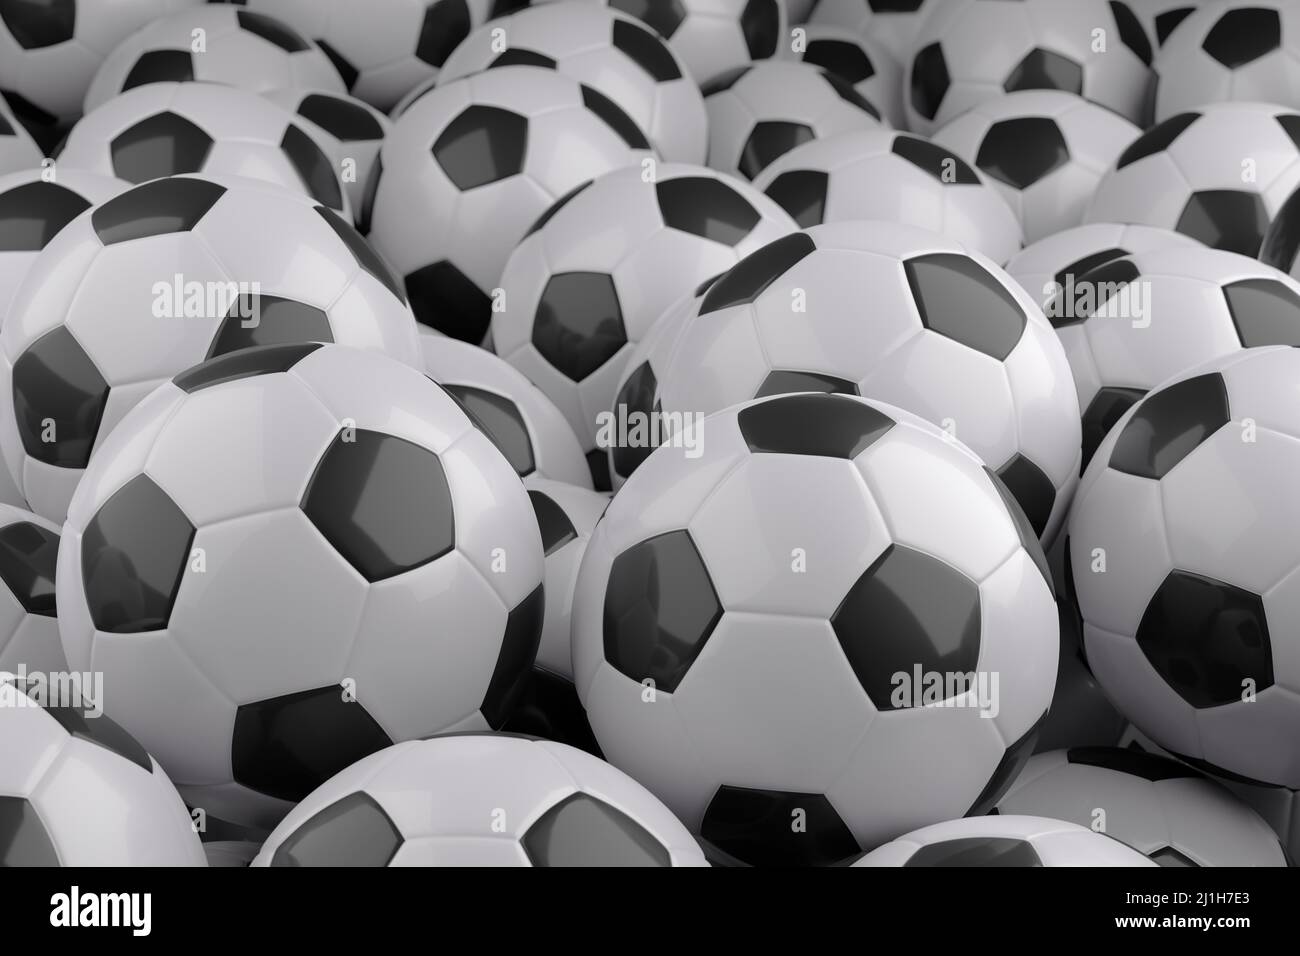 Fond noir et blanc de ballons de football. 3d illustration. Banque D'Images